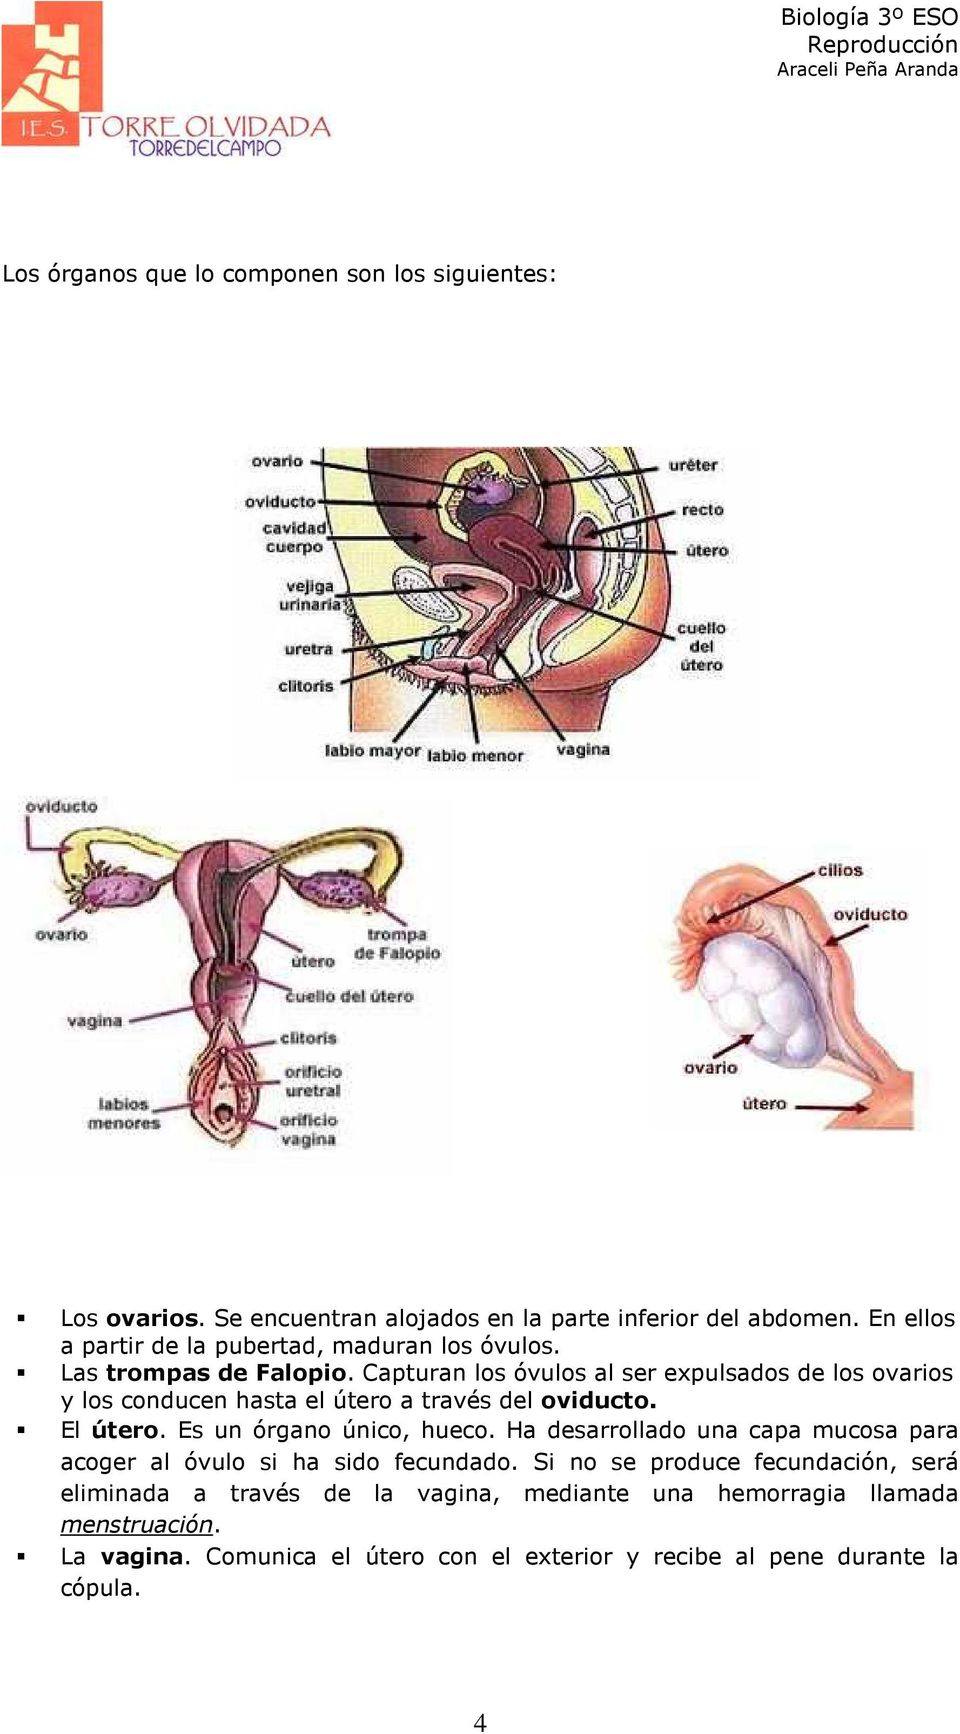 Capturan los óvulos al ser expulsados de los ovarios y los conducen hasta el útero a través del oviducto. El útero. Es un órgano único, hueco.